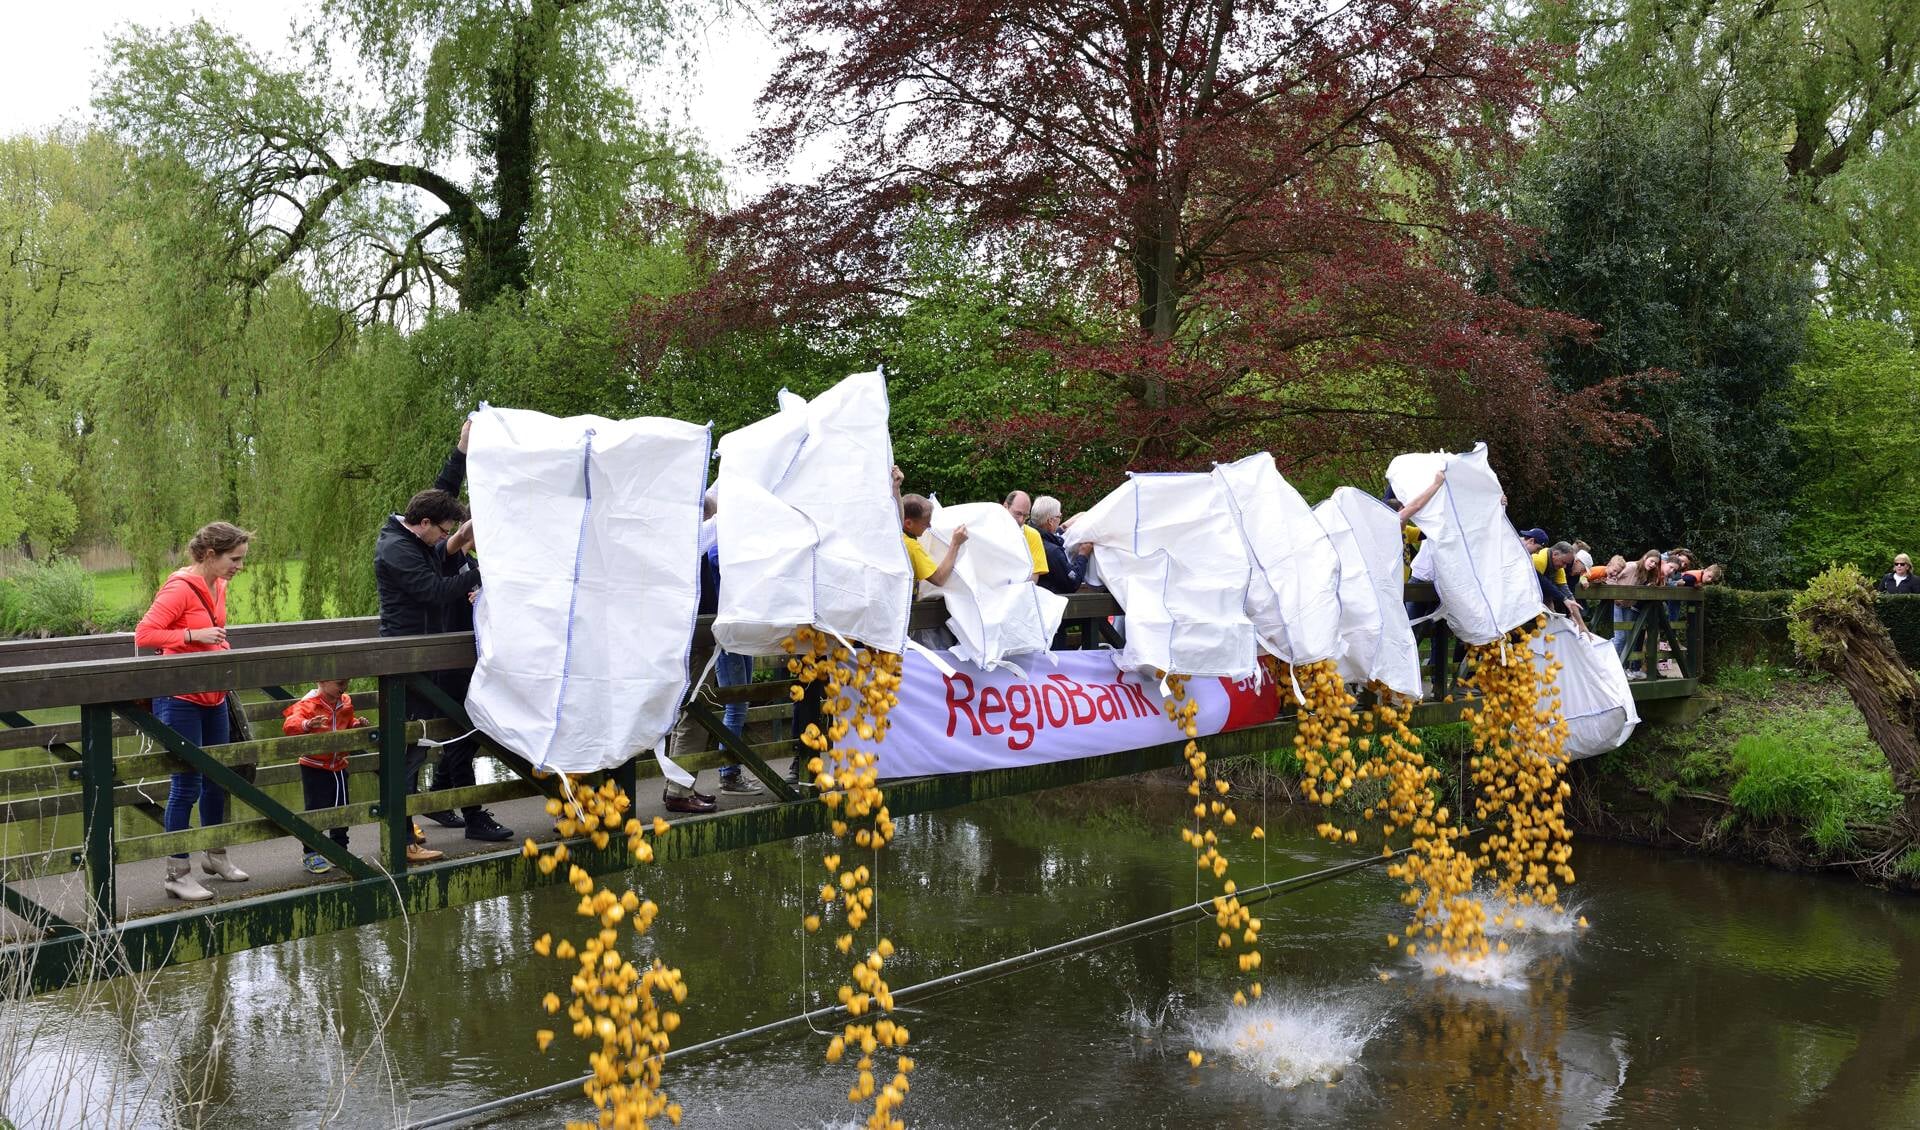 De te waterlating van de gele eendjes in 2018 (archieffoto)